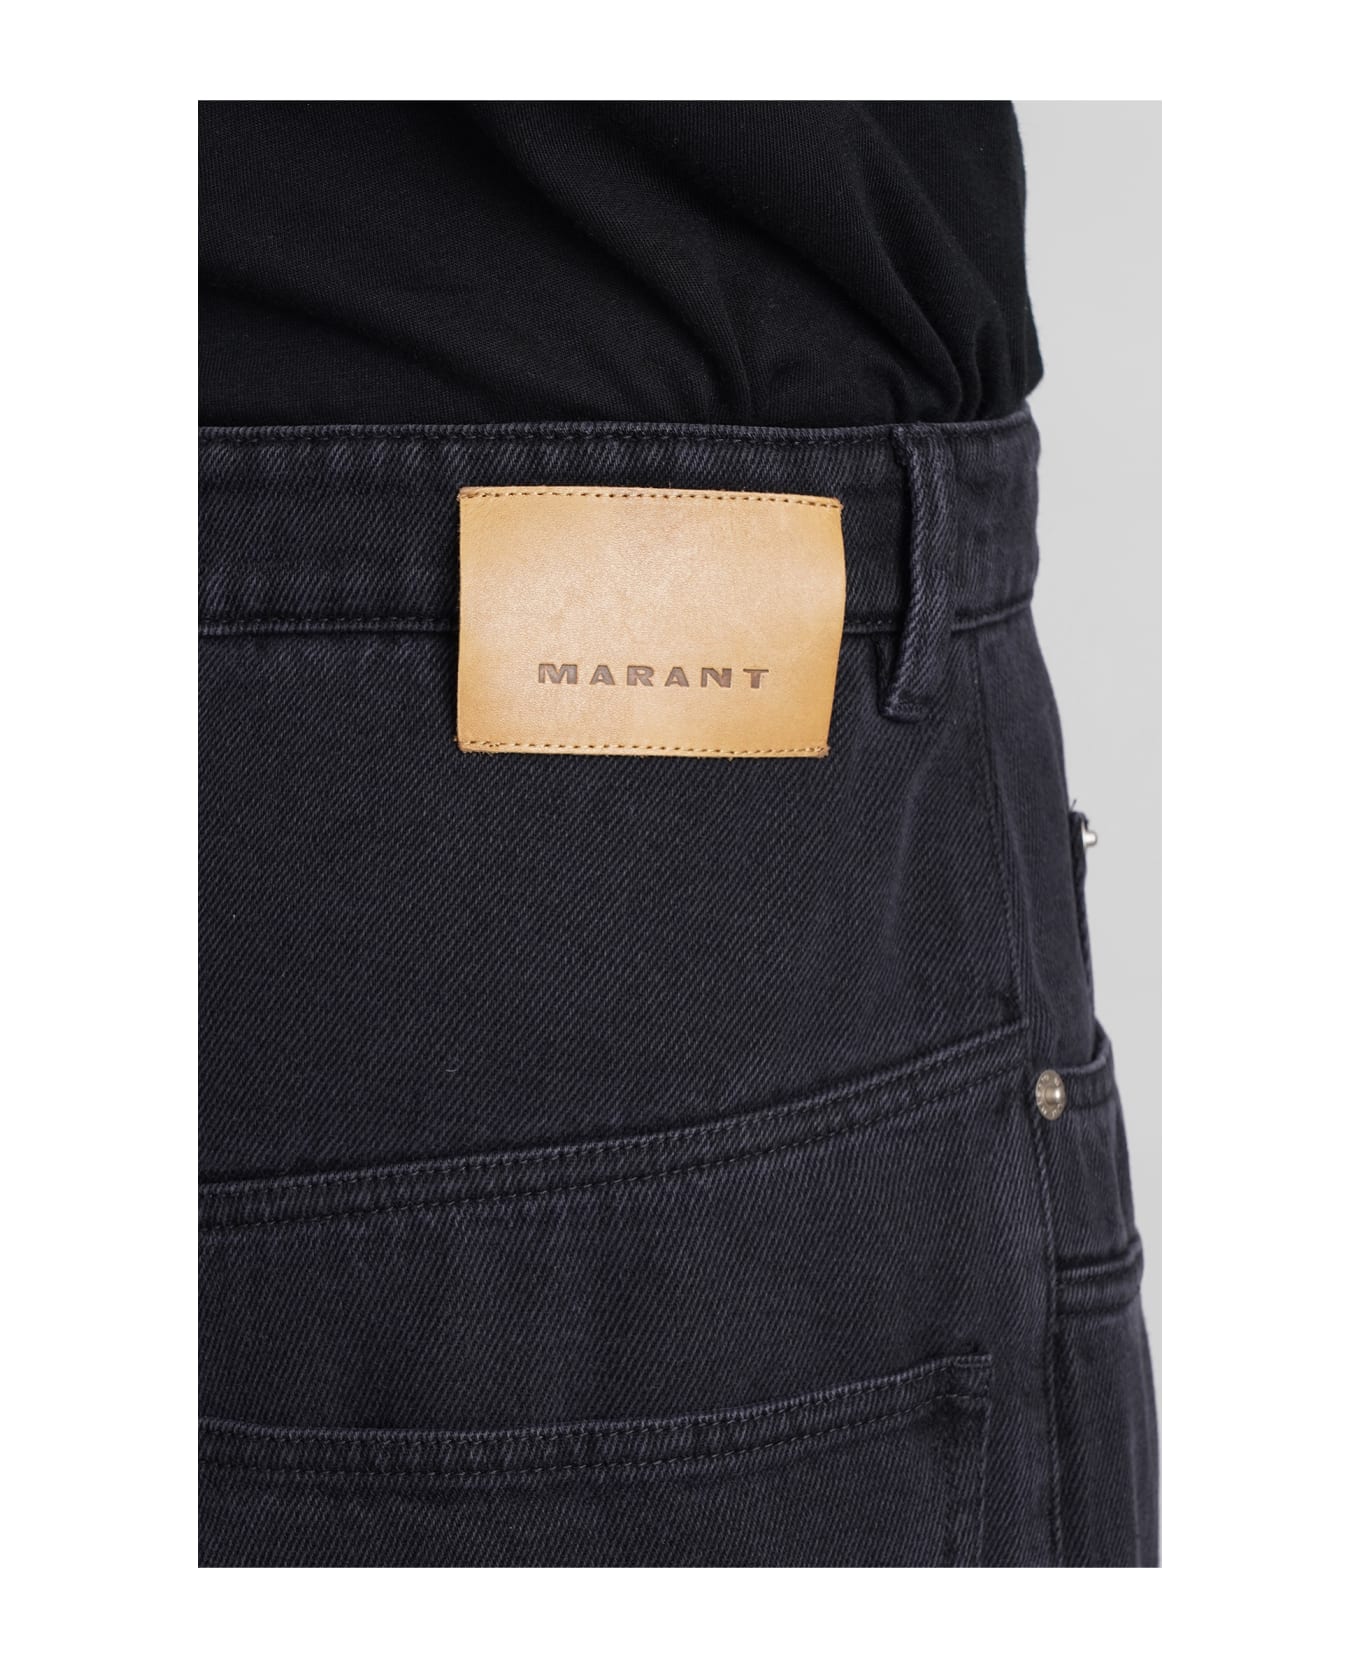 Isabel Marant Teren Jeans In Black Cotton - BLACK デニム